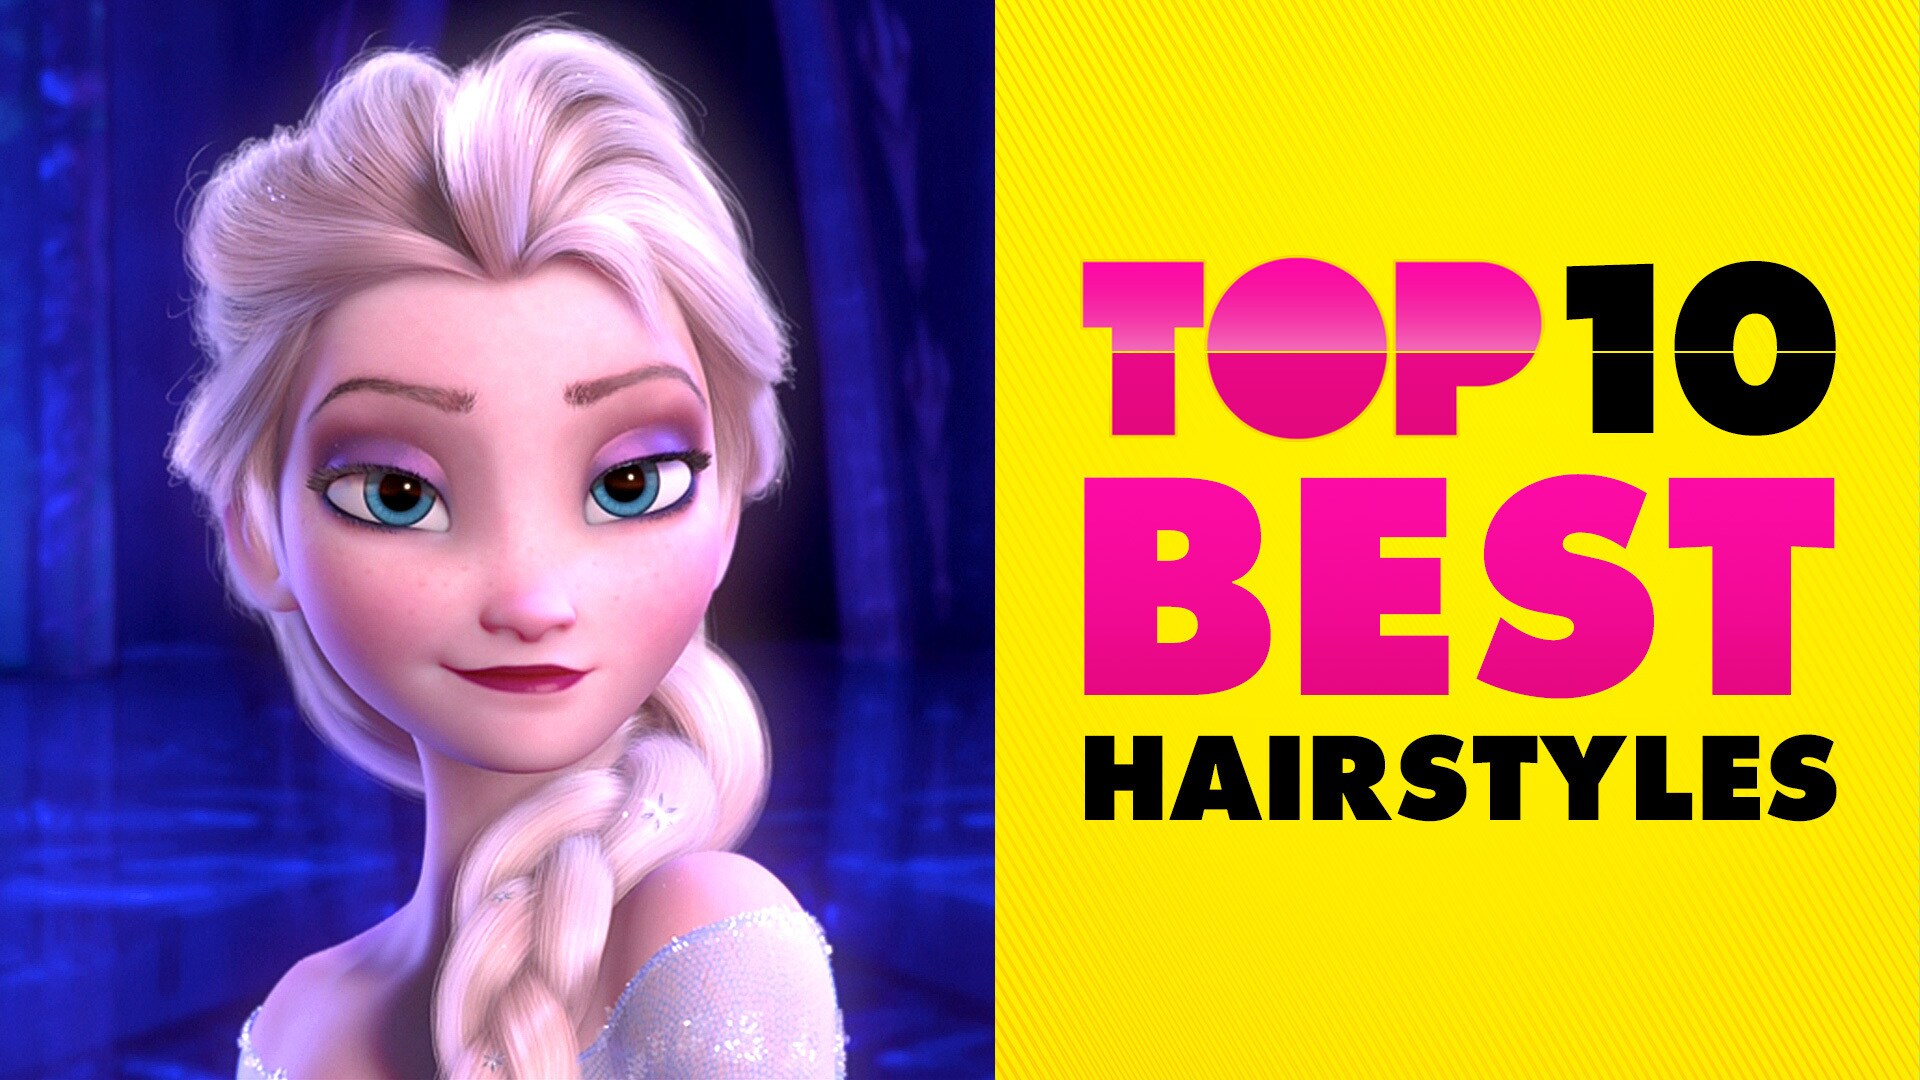 Best Hairstyles (Ladies Edition) | Disney Top 10